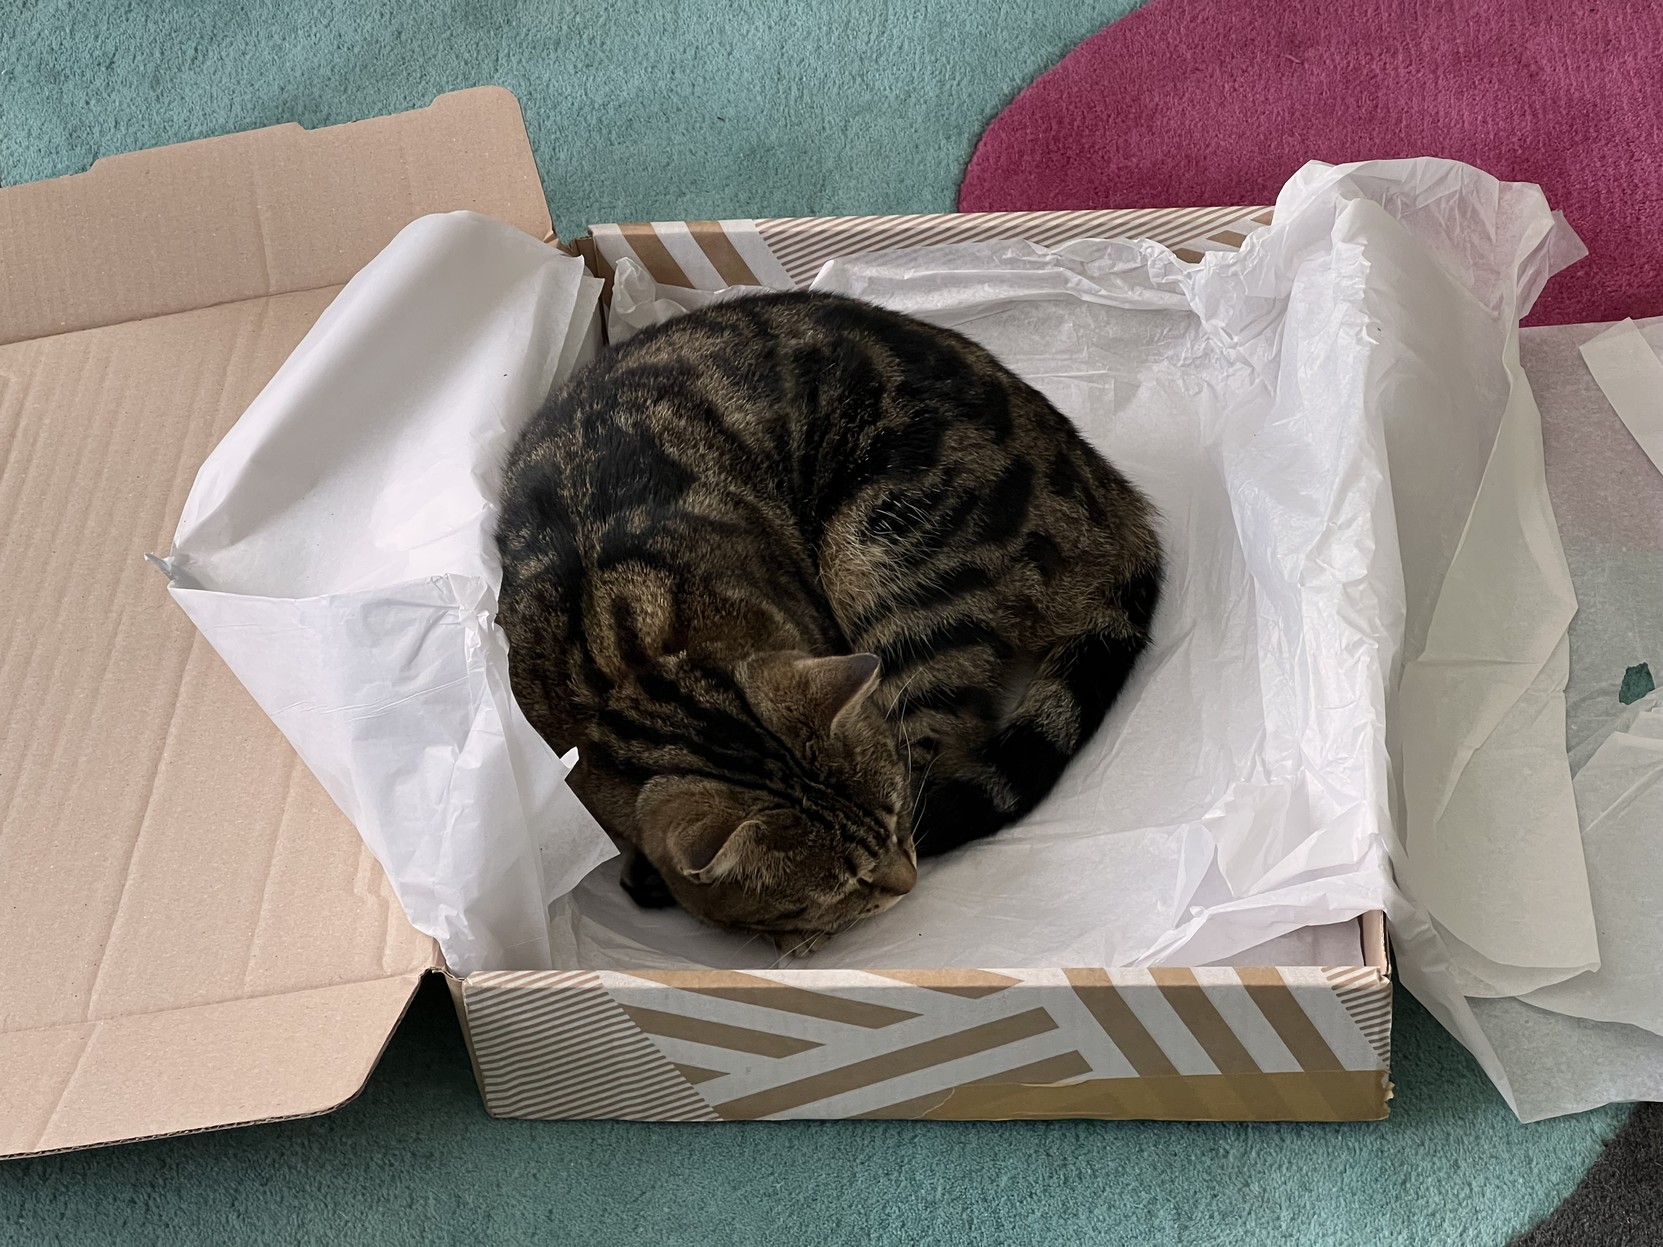 Cat rolled in a box